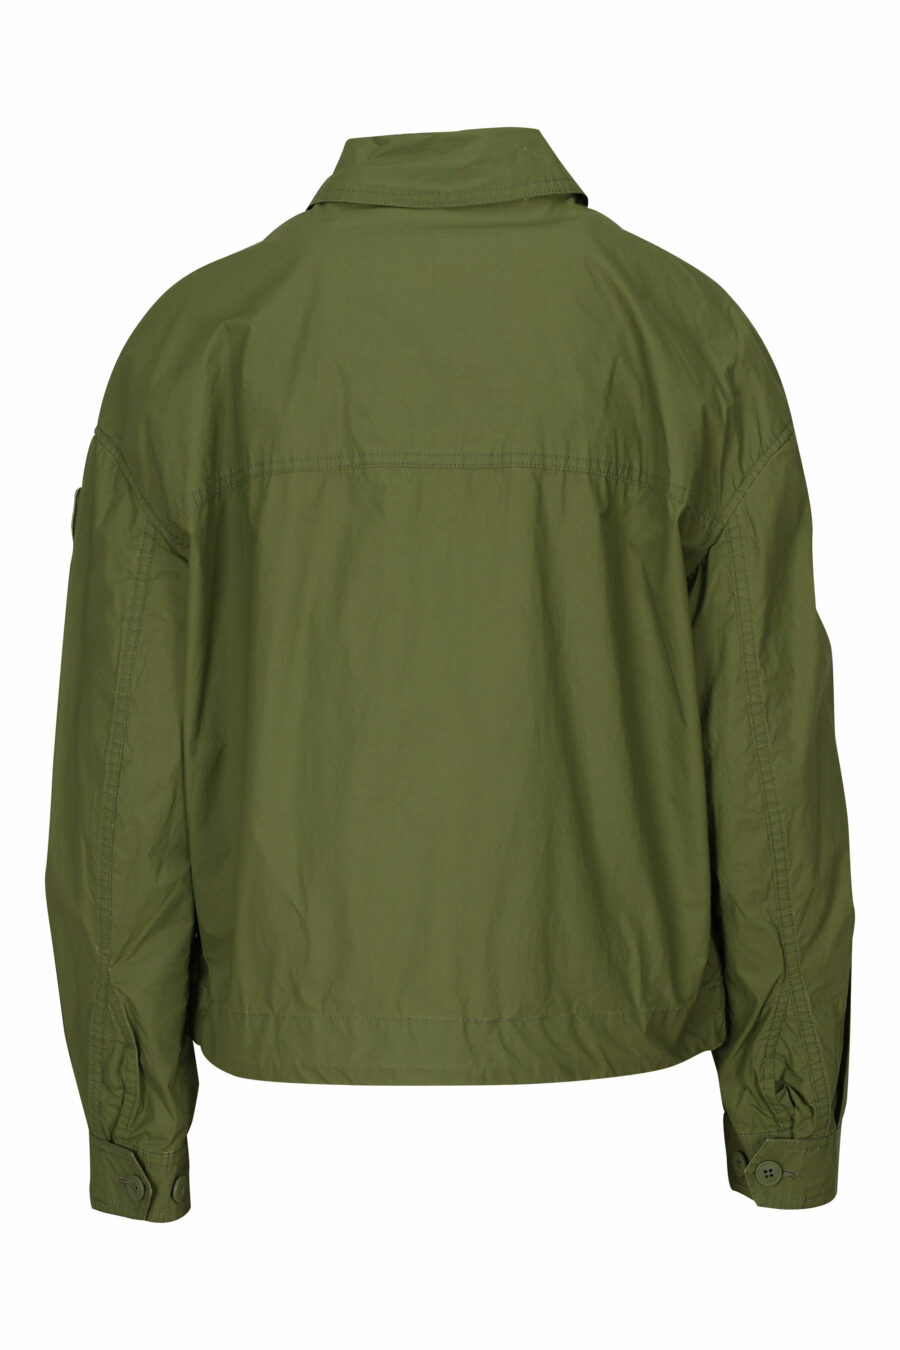 Veste vert militaire avec poches avant et logo latéral - 8058610712600 2